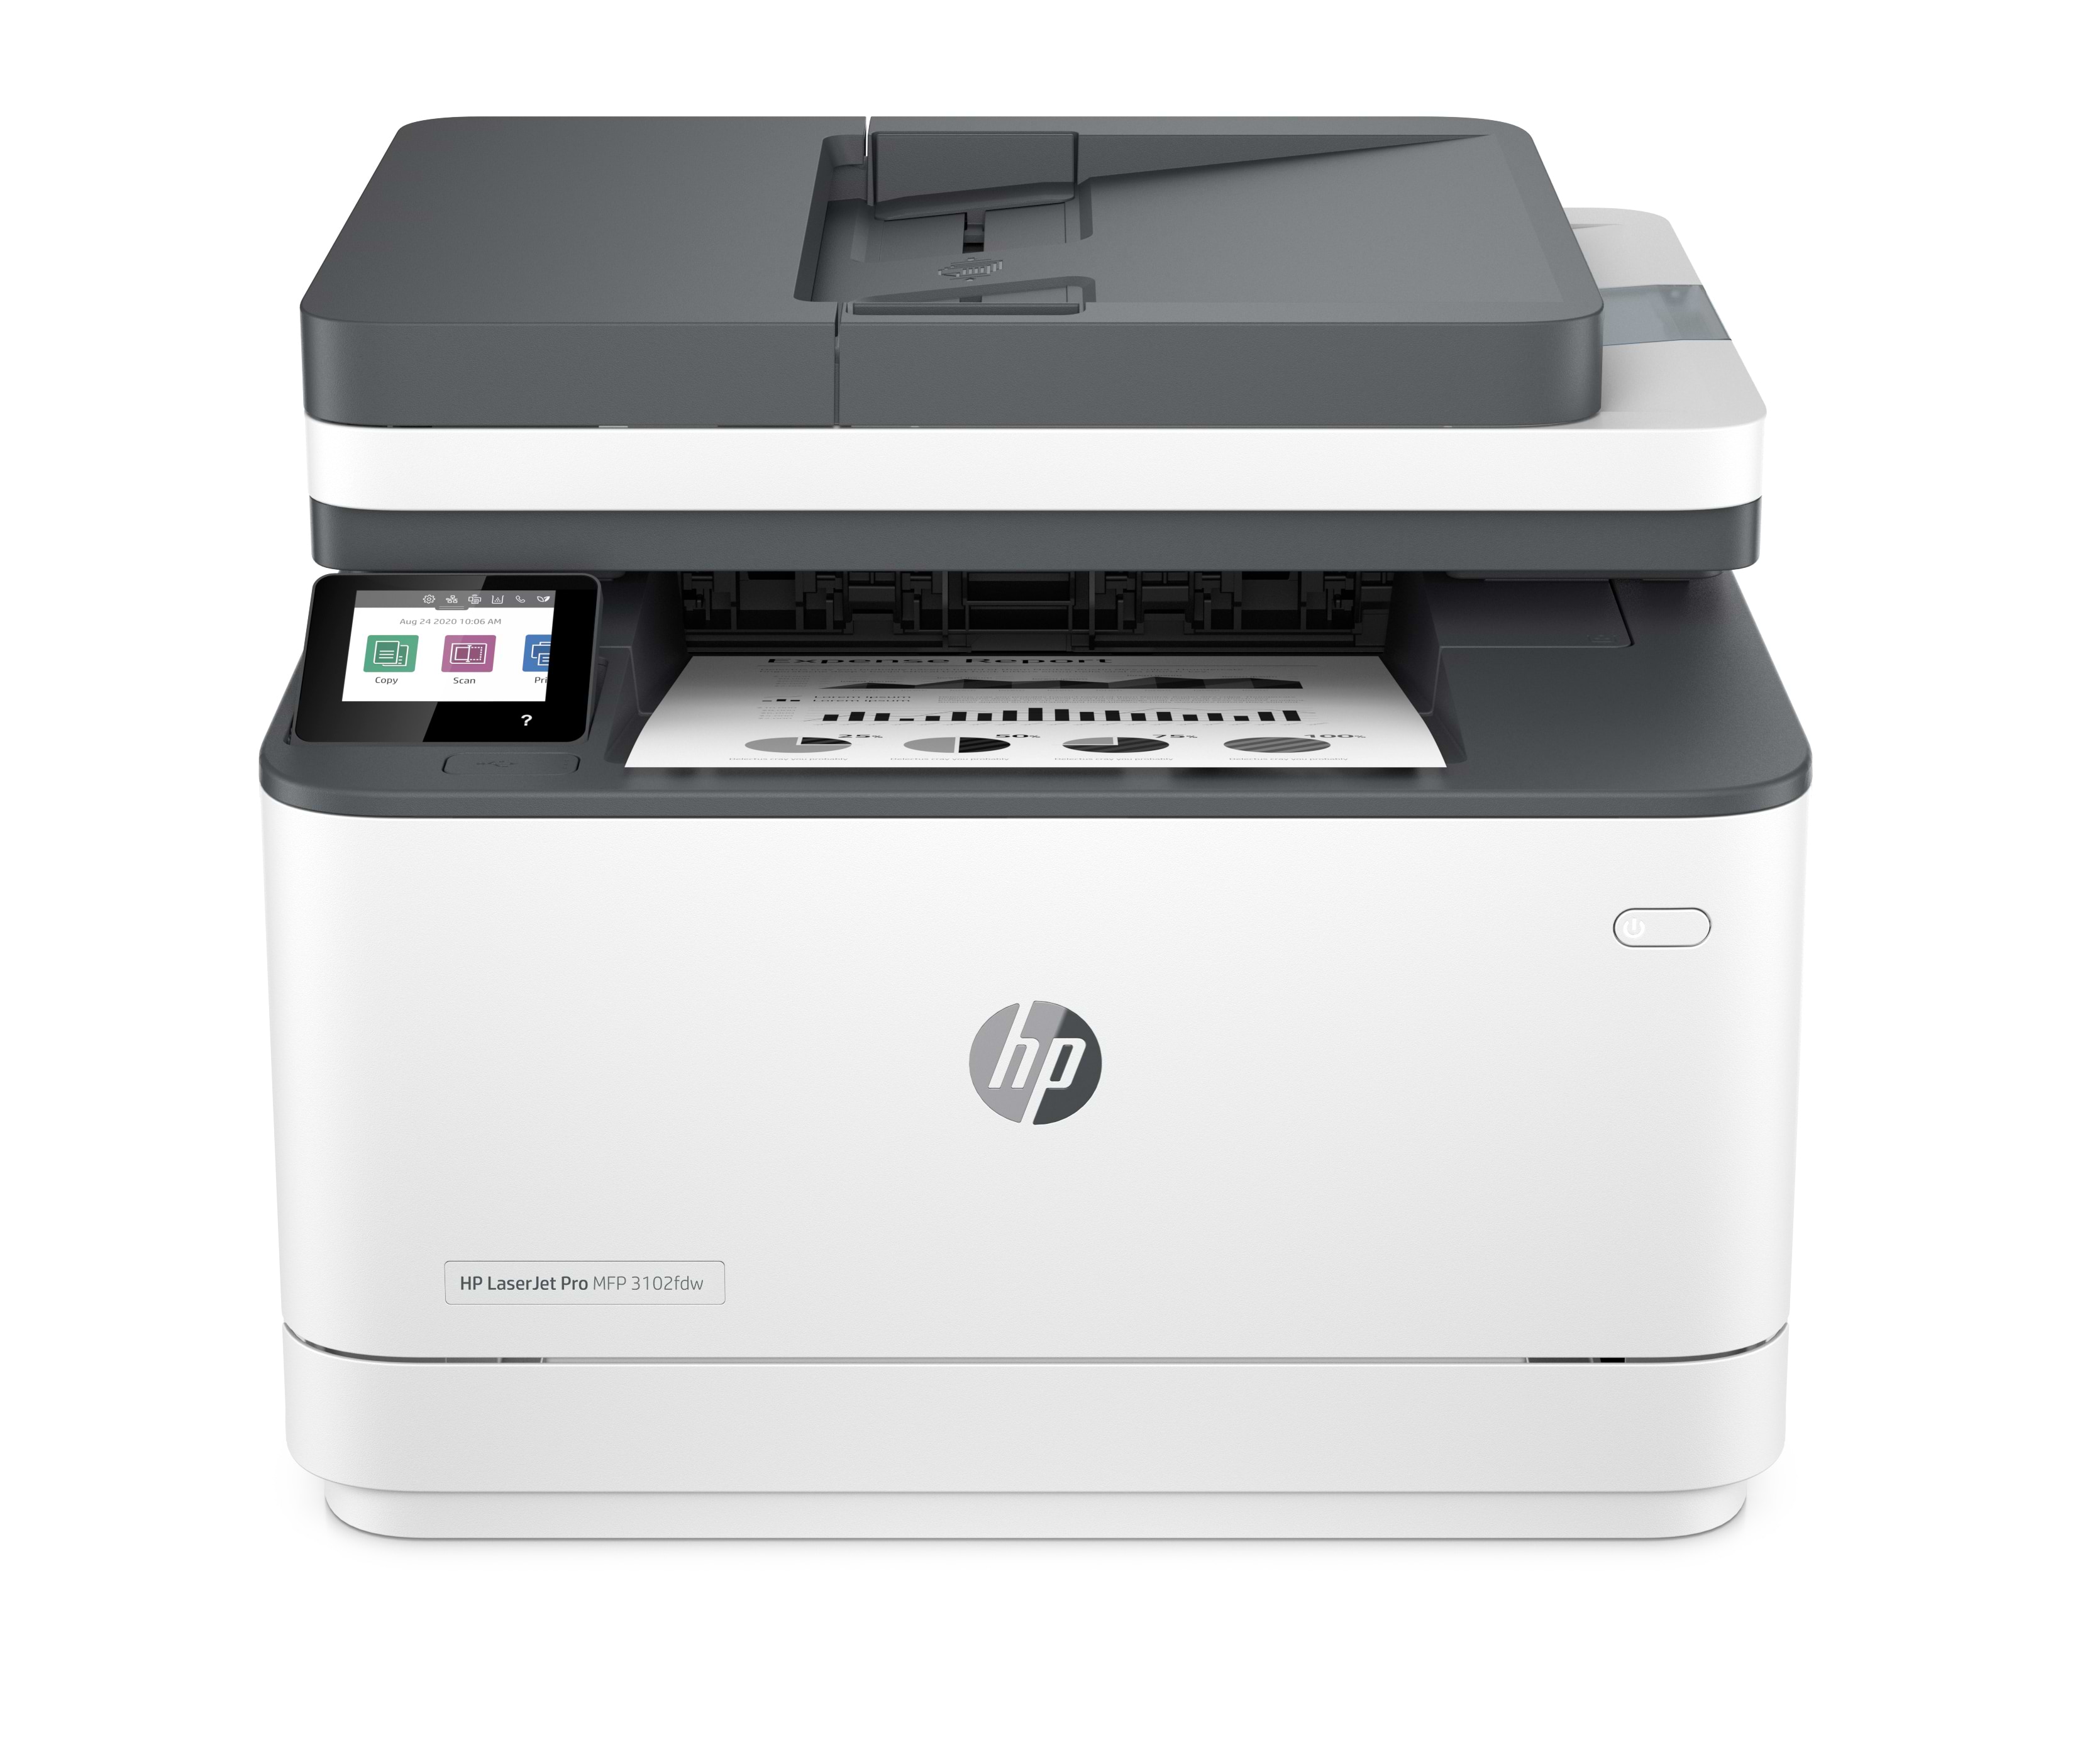 מדפסת אלחוטית משולבת HP LaserJet Pro MFP 3102fdw - צבע לבן ושחור שנה אחריות ע"י יבואן הרשמי